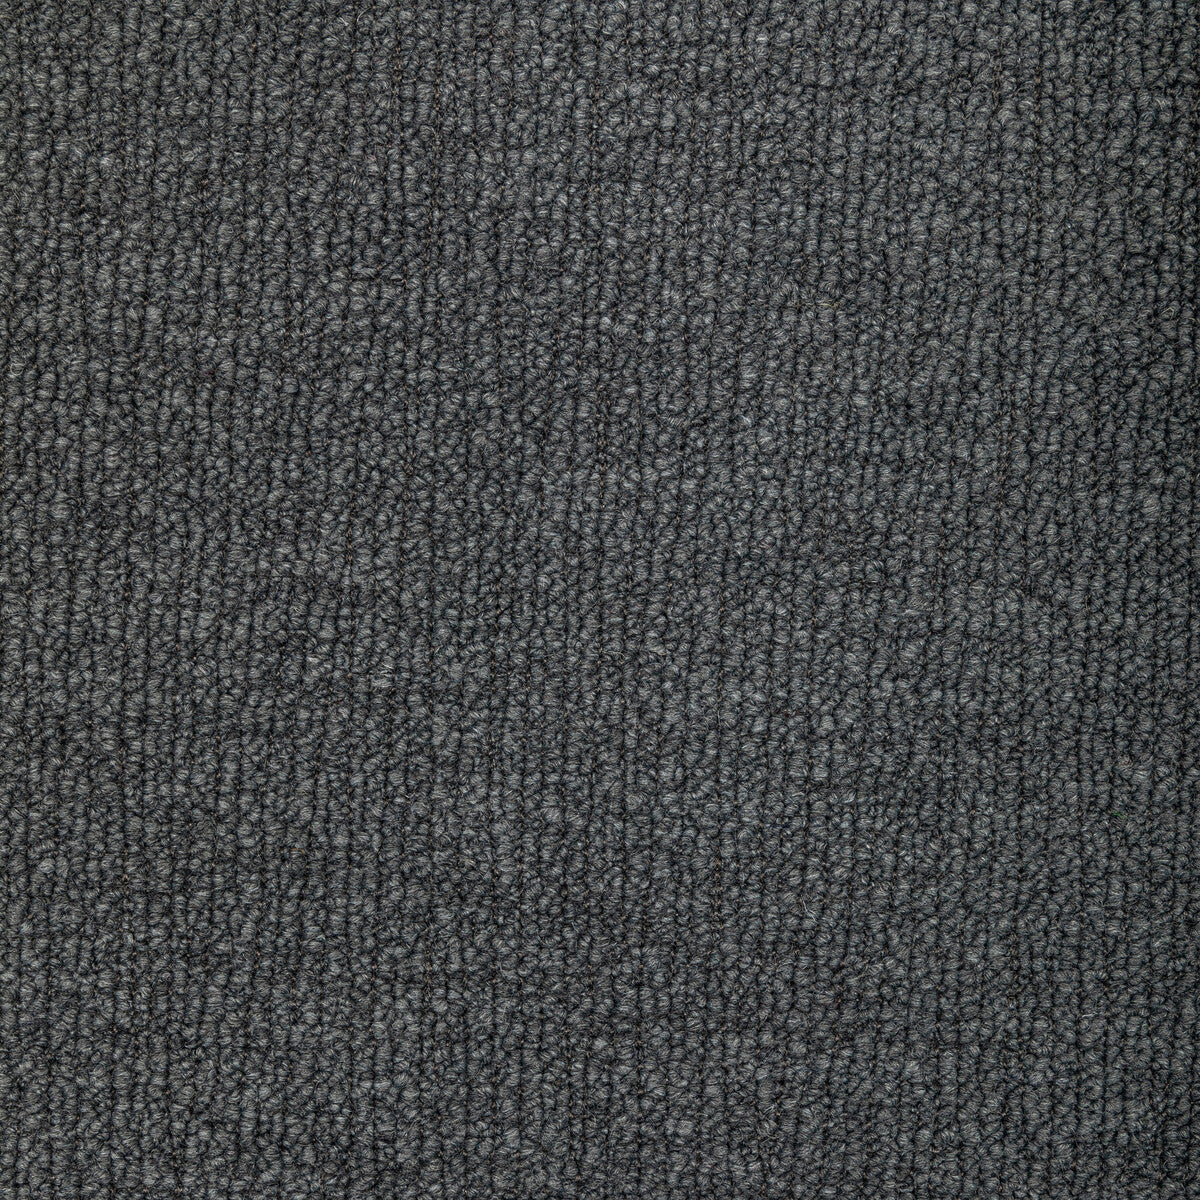 Kravet Design fabric in 36345-21 color - pattern 36345.21.0 - by Kravet Design